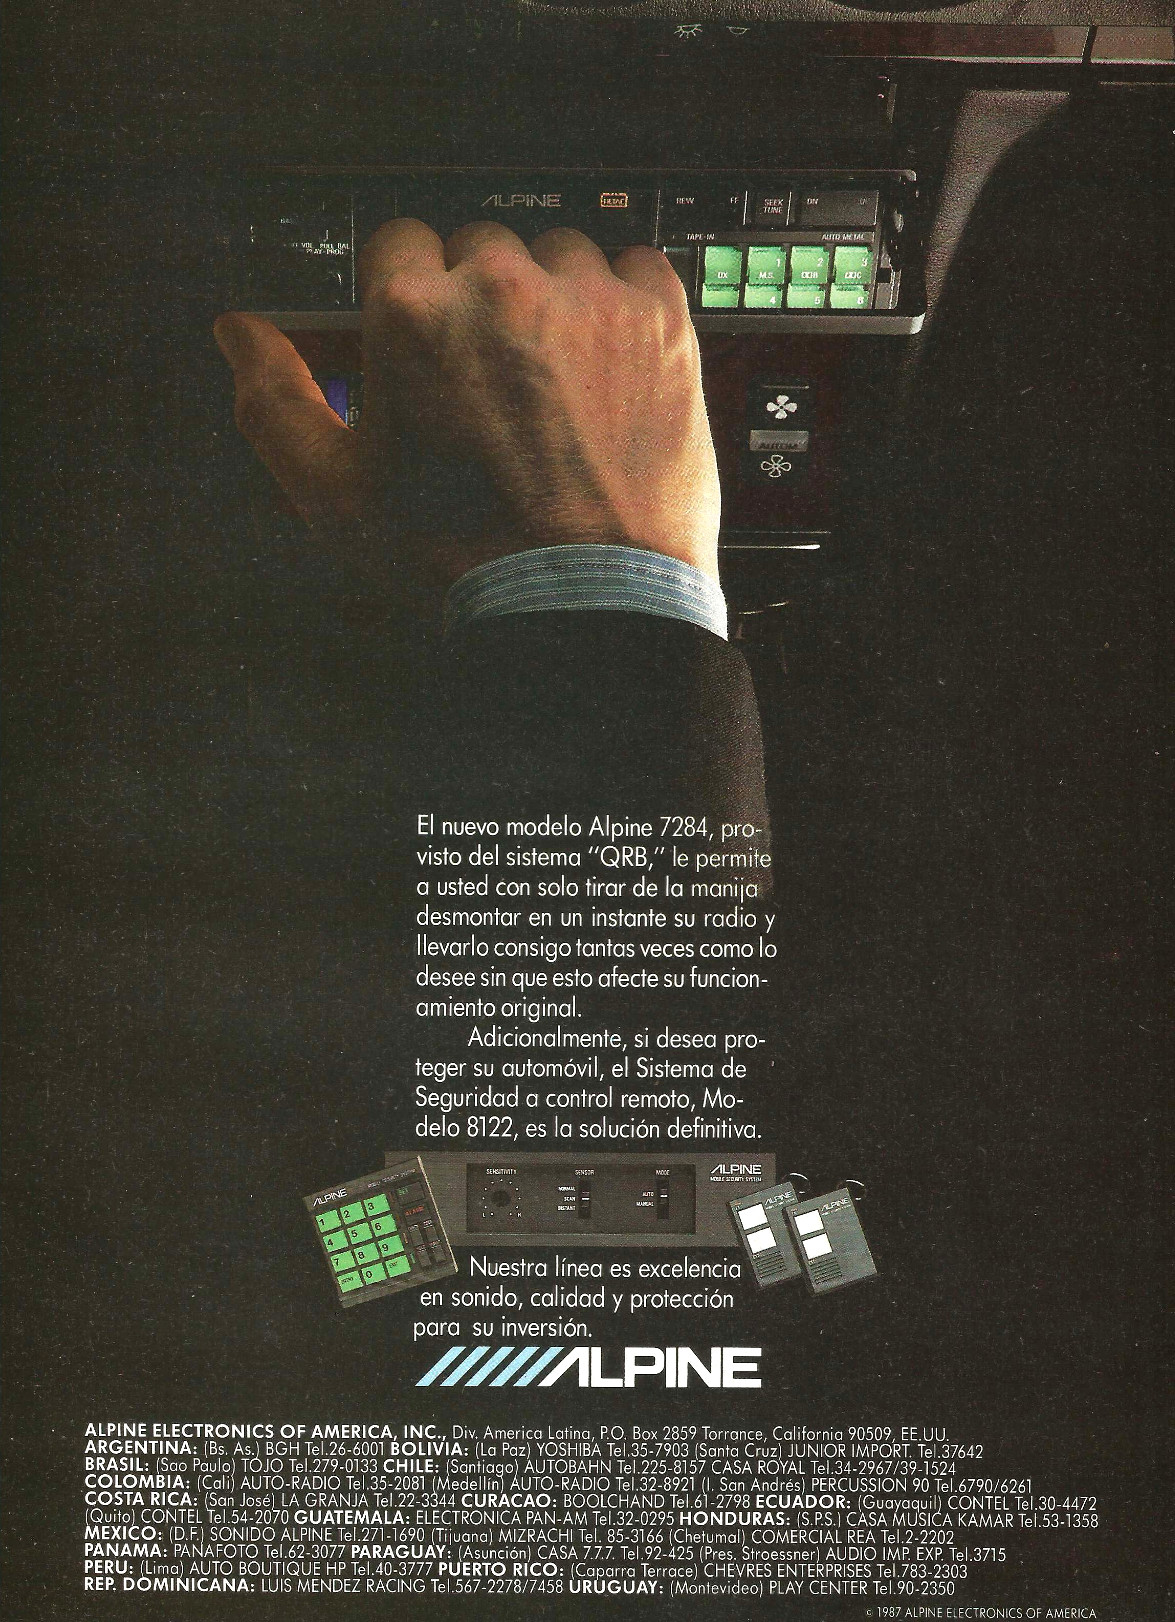 Publicidad - Autoestéreo Alpine - Octubre 1987